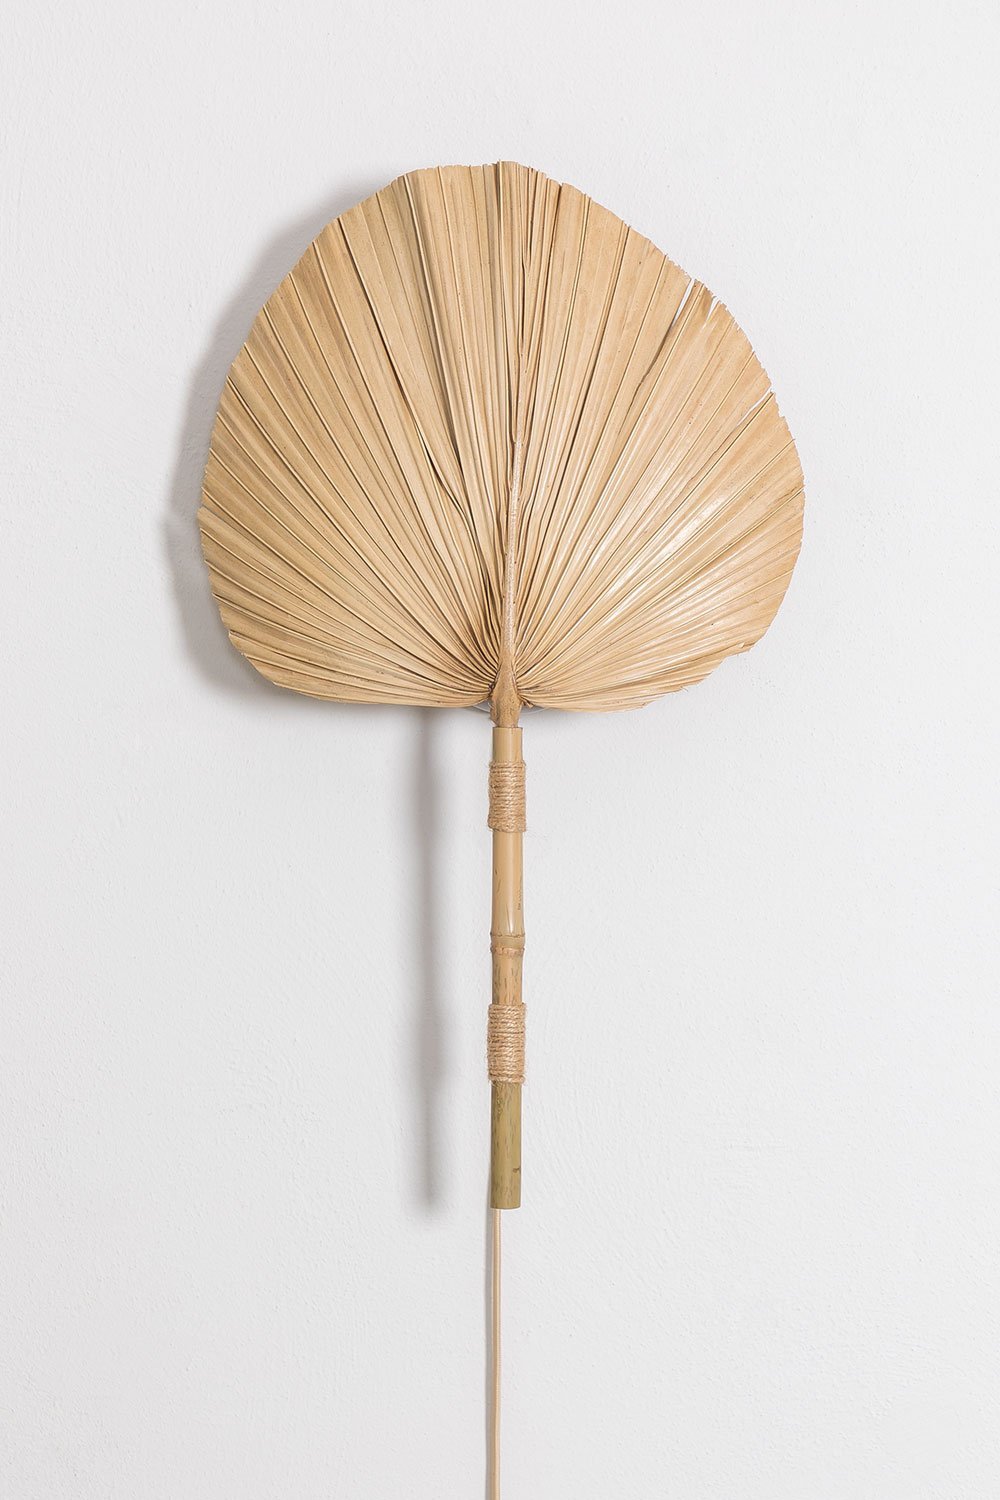 Bamboe wandlamp Pruyans , galerij beeld 1